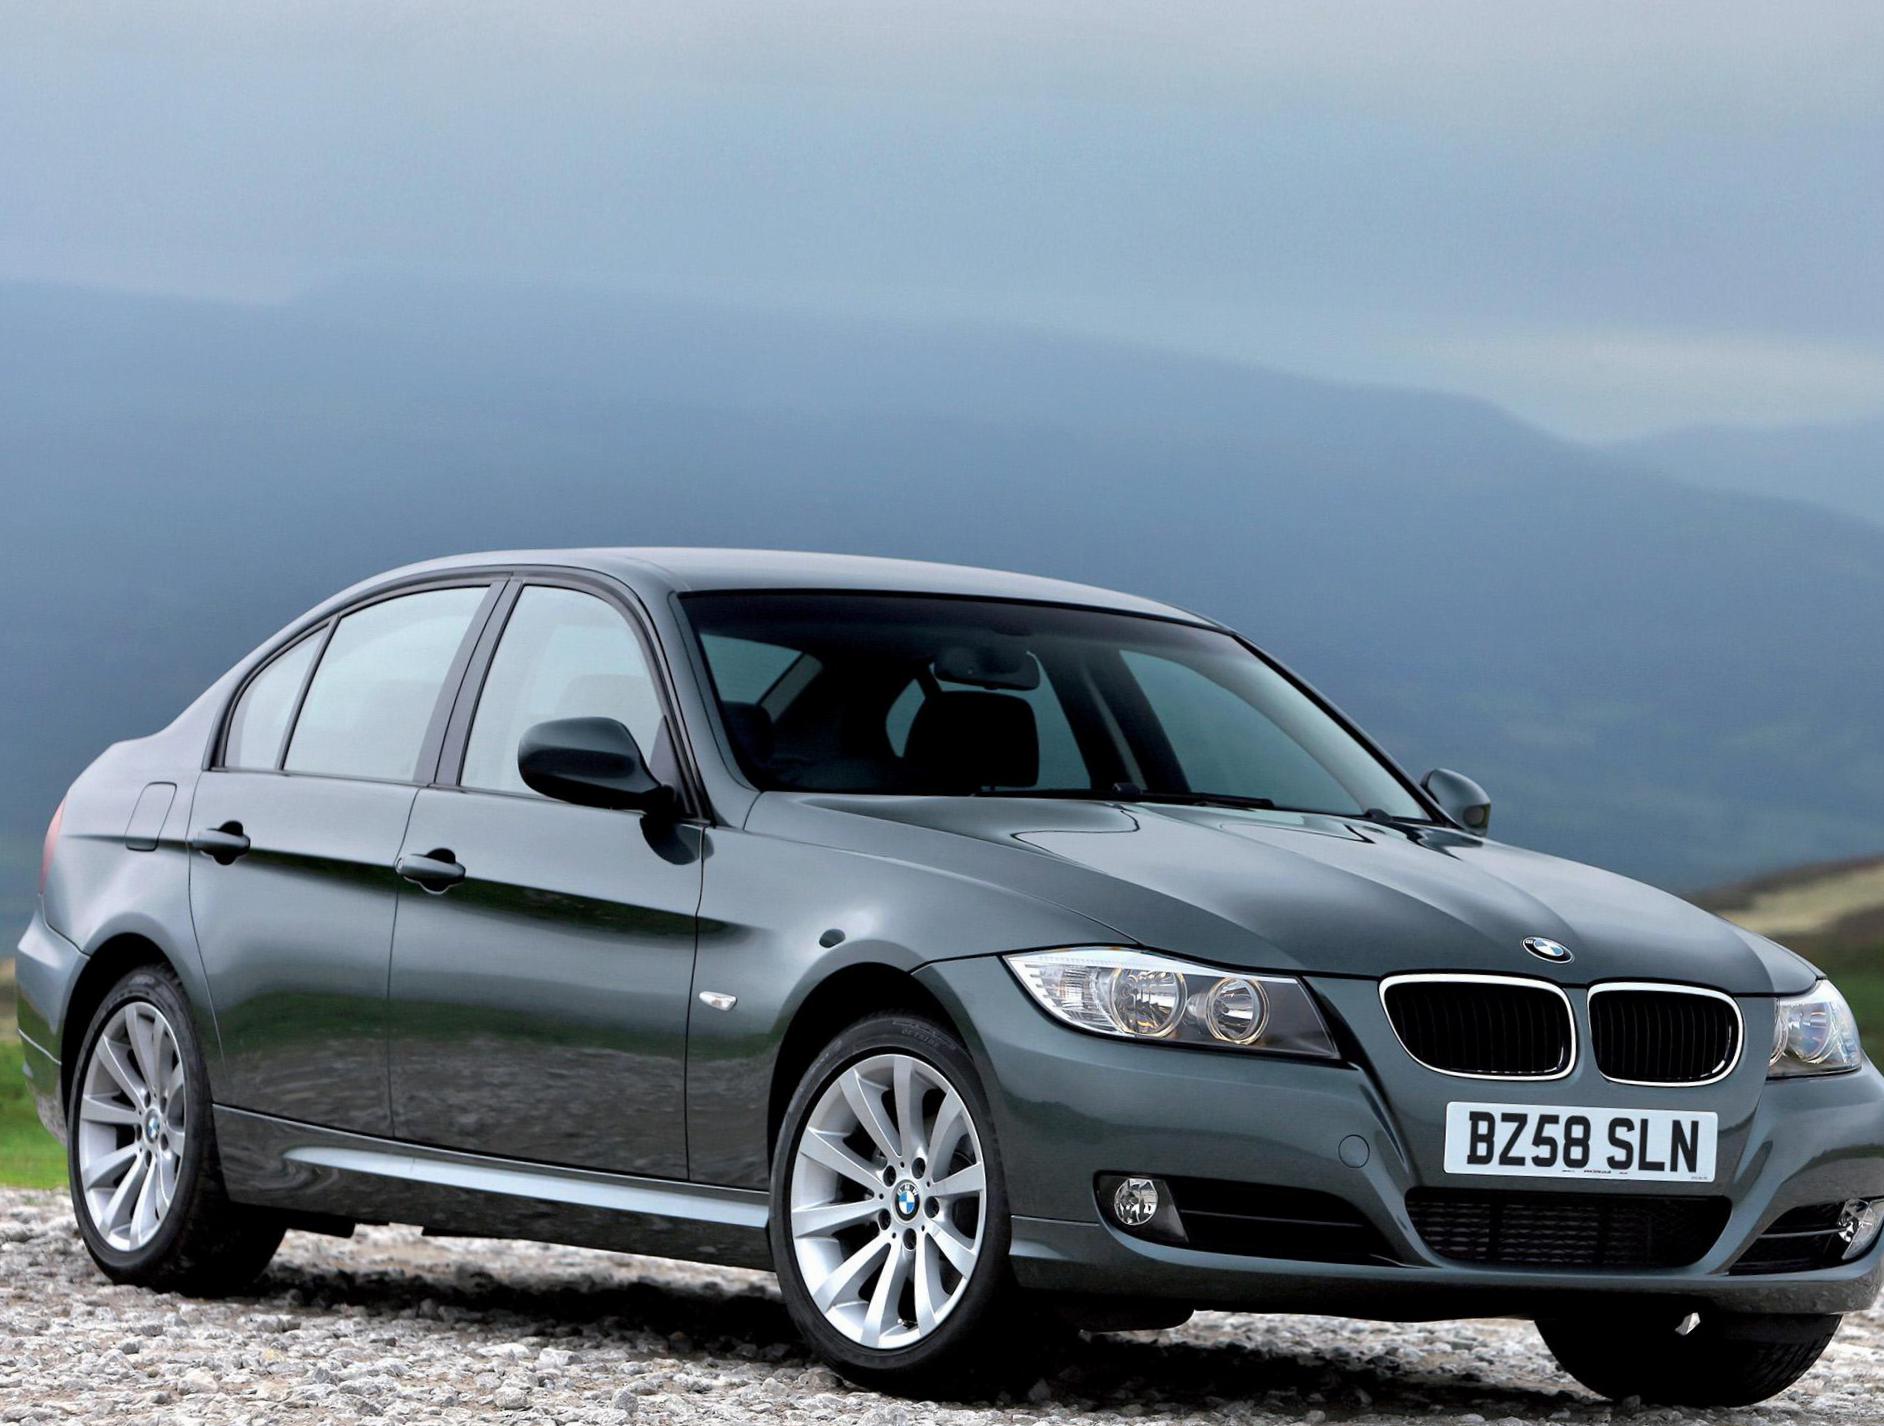 BMW 3 Series Sedan (E90) review 2010